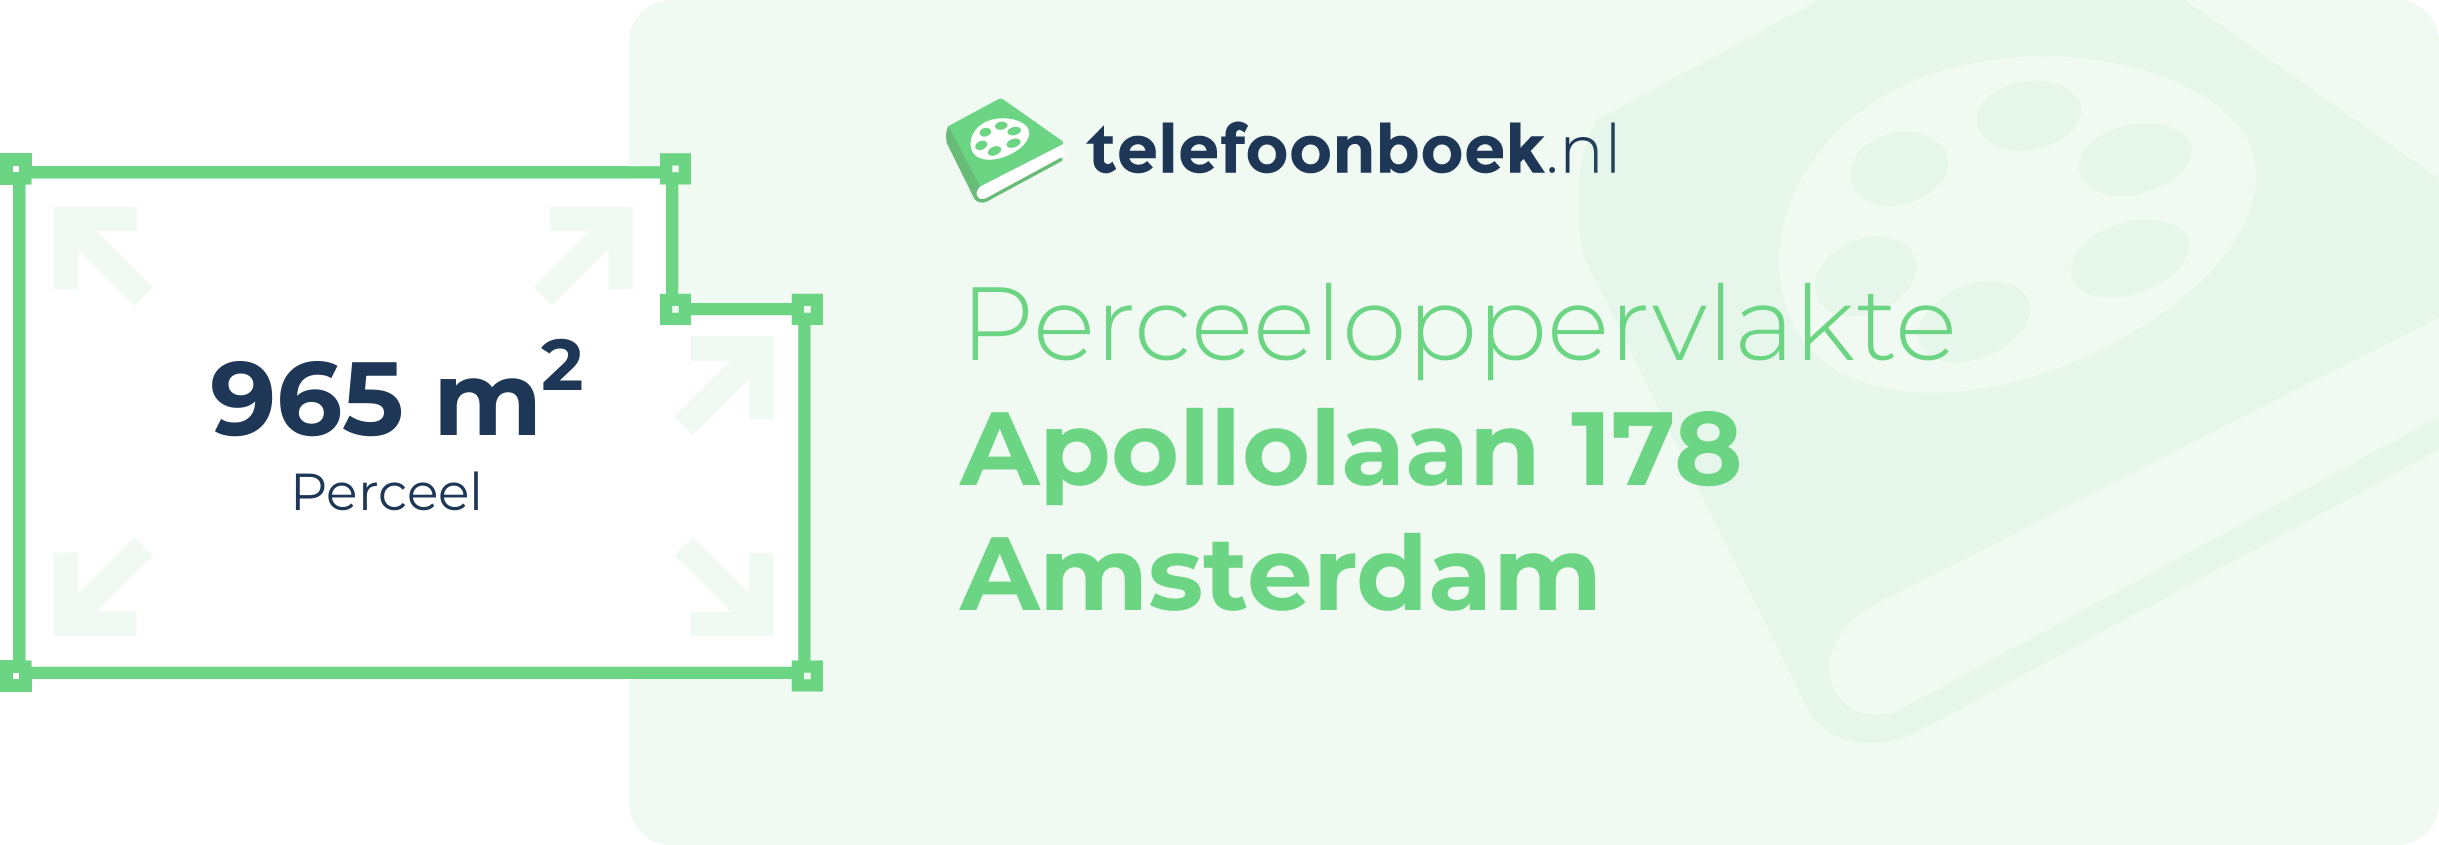 Perceeloppervlakte Apollolaan 178 Amsterdam